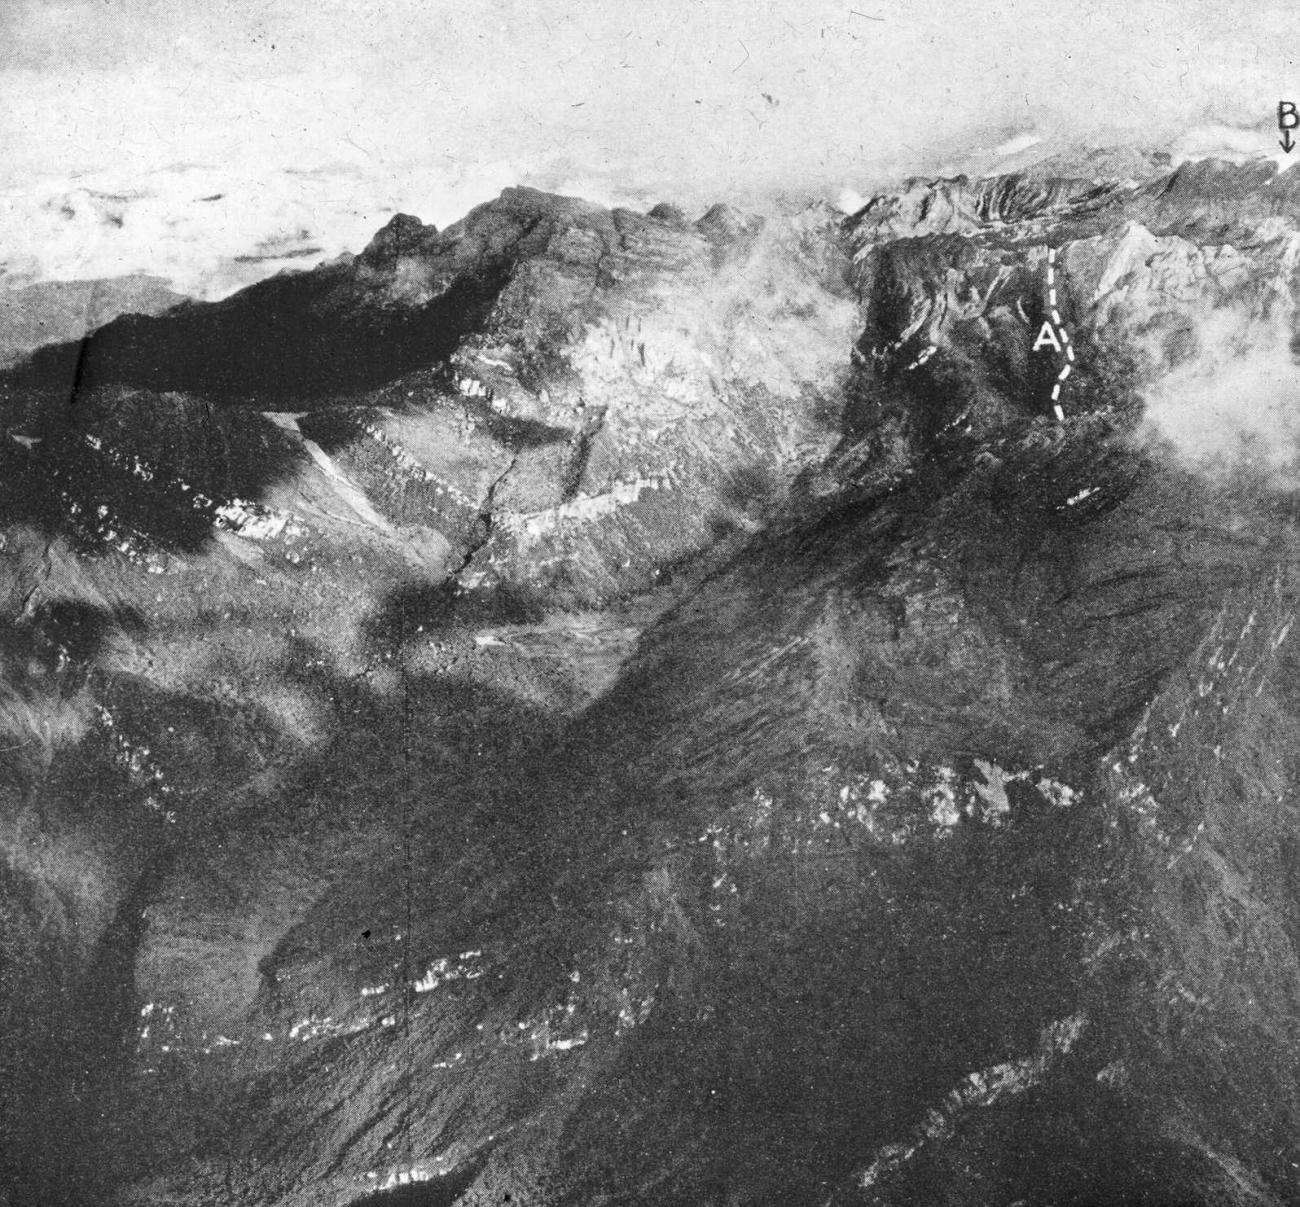 BD/66/458 - 
Luchtopname van een berglandschap met erop ingetekend de route naar een van de toppen
